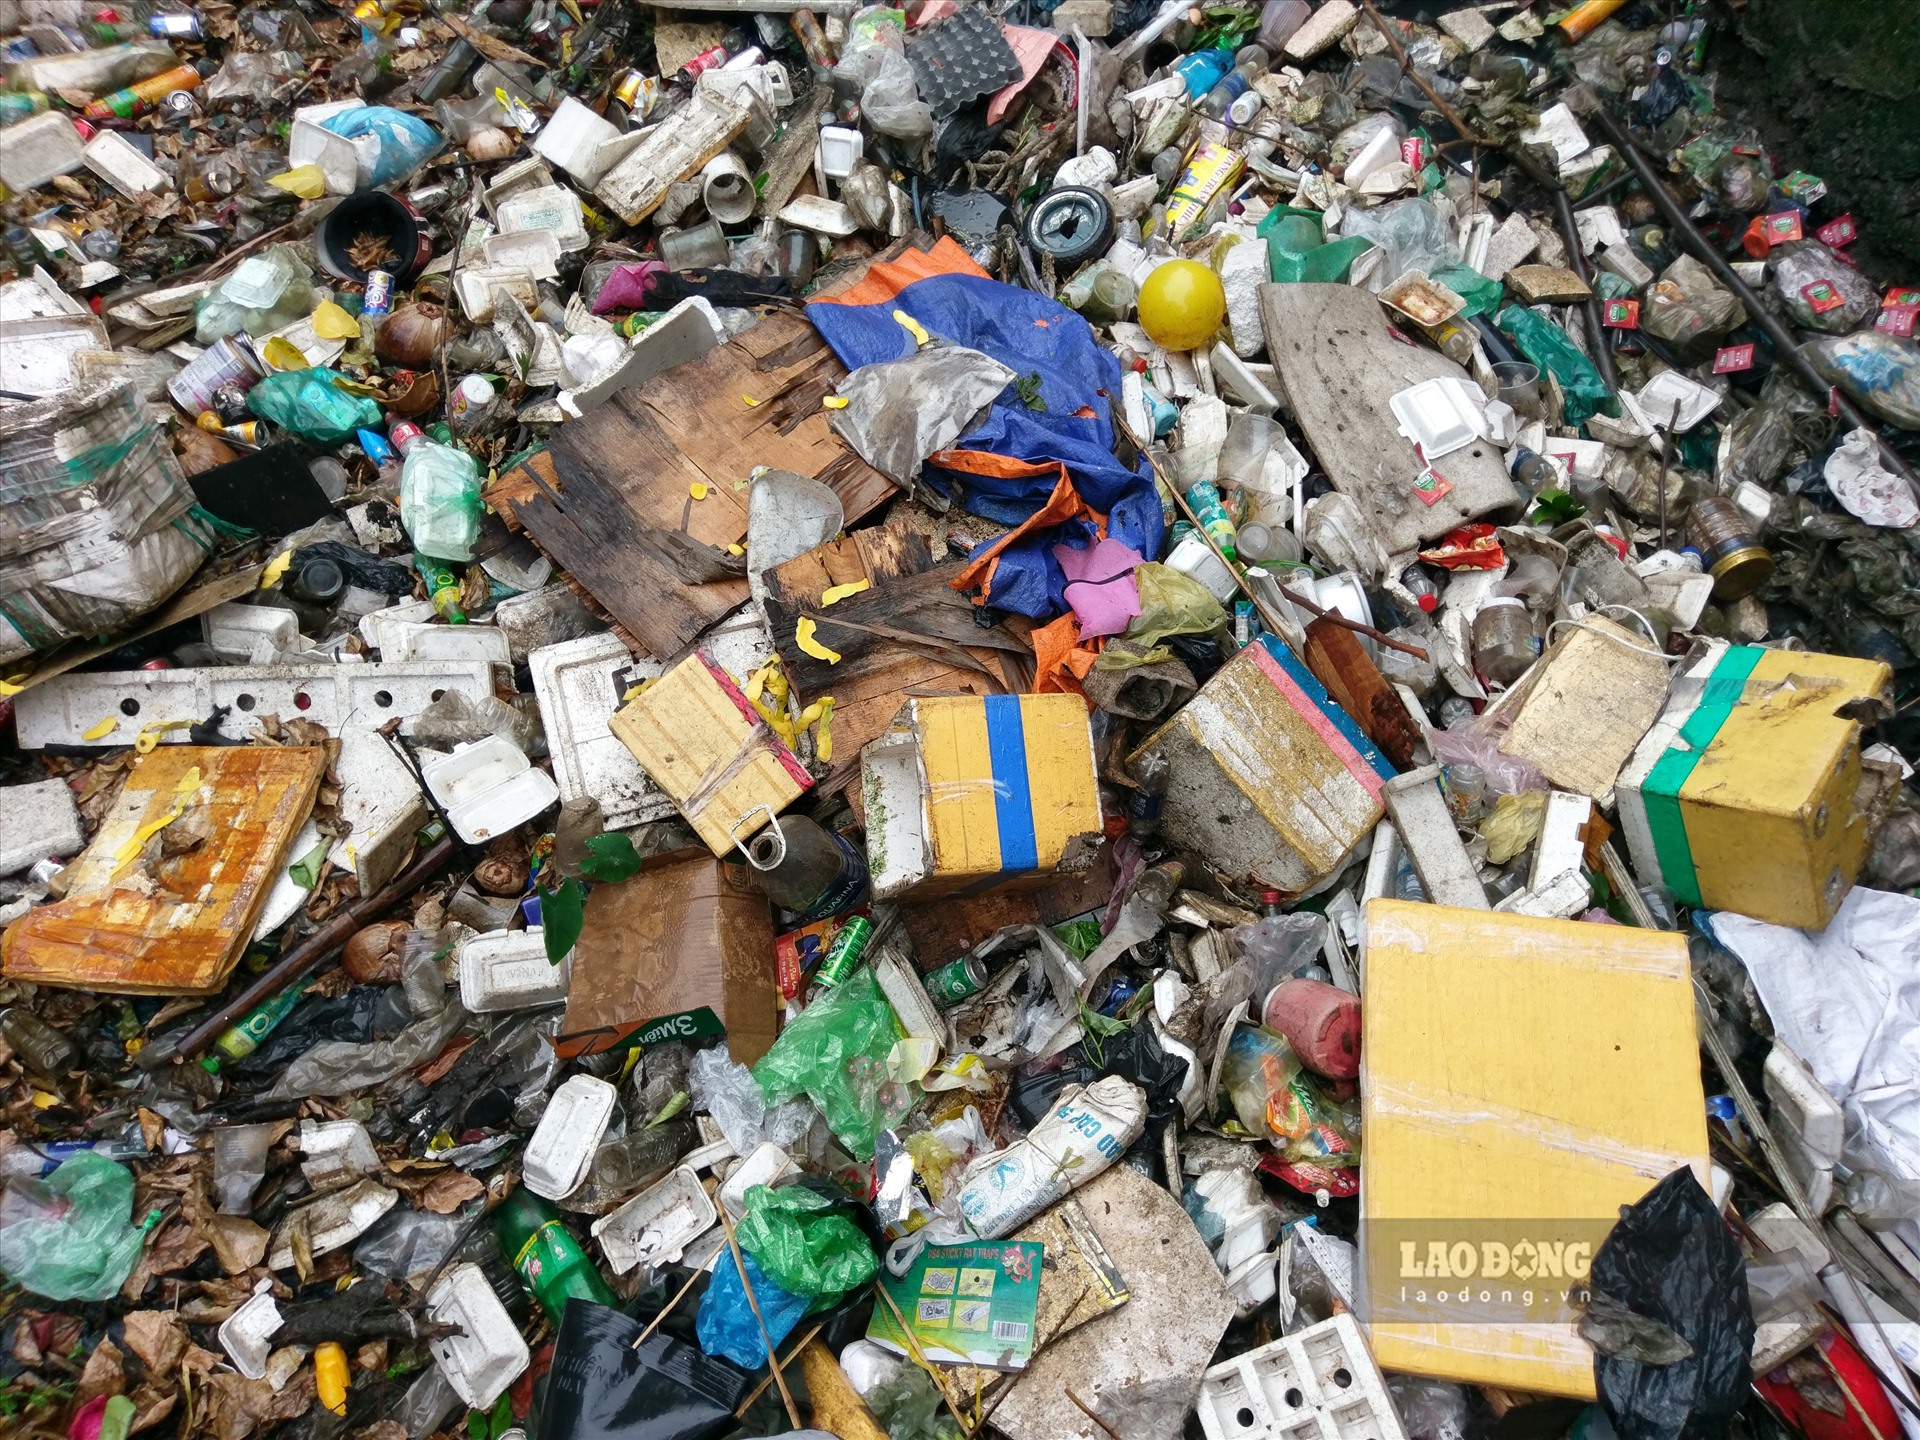 Các loại rác như chai nhựa, túi nylon, mút xốp, xác động vật... phủ kín mặt kênh. Bà Hoành Thị Lài, đã hơn 20 năm sống tại khu vực này, cho biết rác ngập kín kênh hơn 6 tháng nay nhưng không thấy nhân viên vệ sinh môi trường đến khơi thông.   Ảnh: Minh Quân